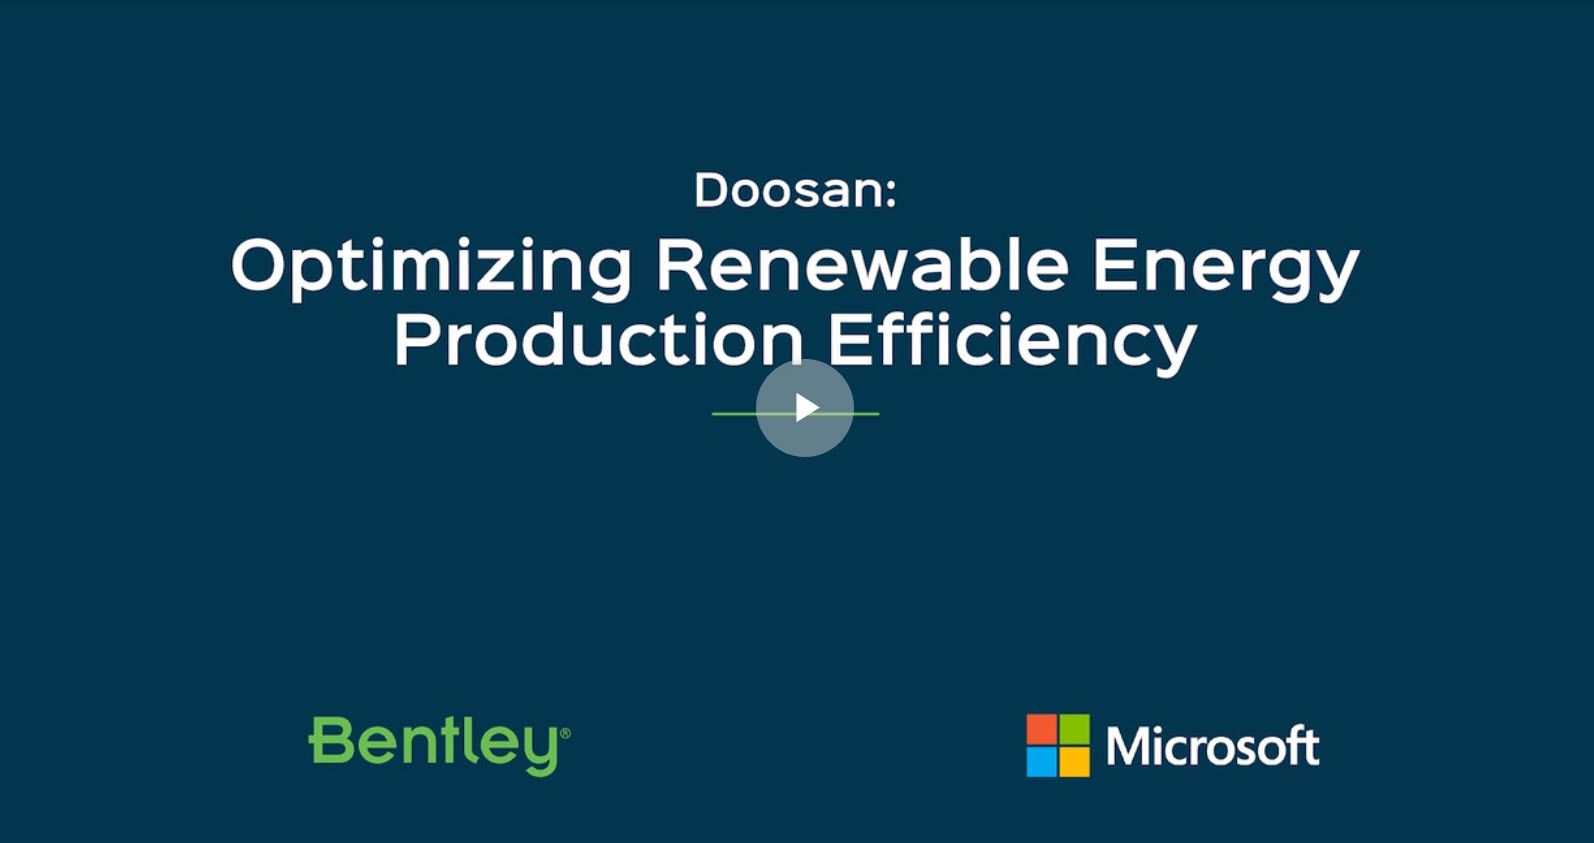 Doosan: Optimizing Renewable Energy Production Efficiency